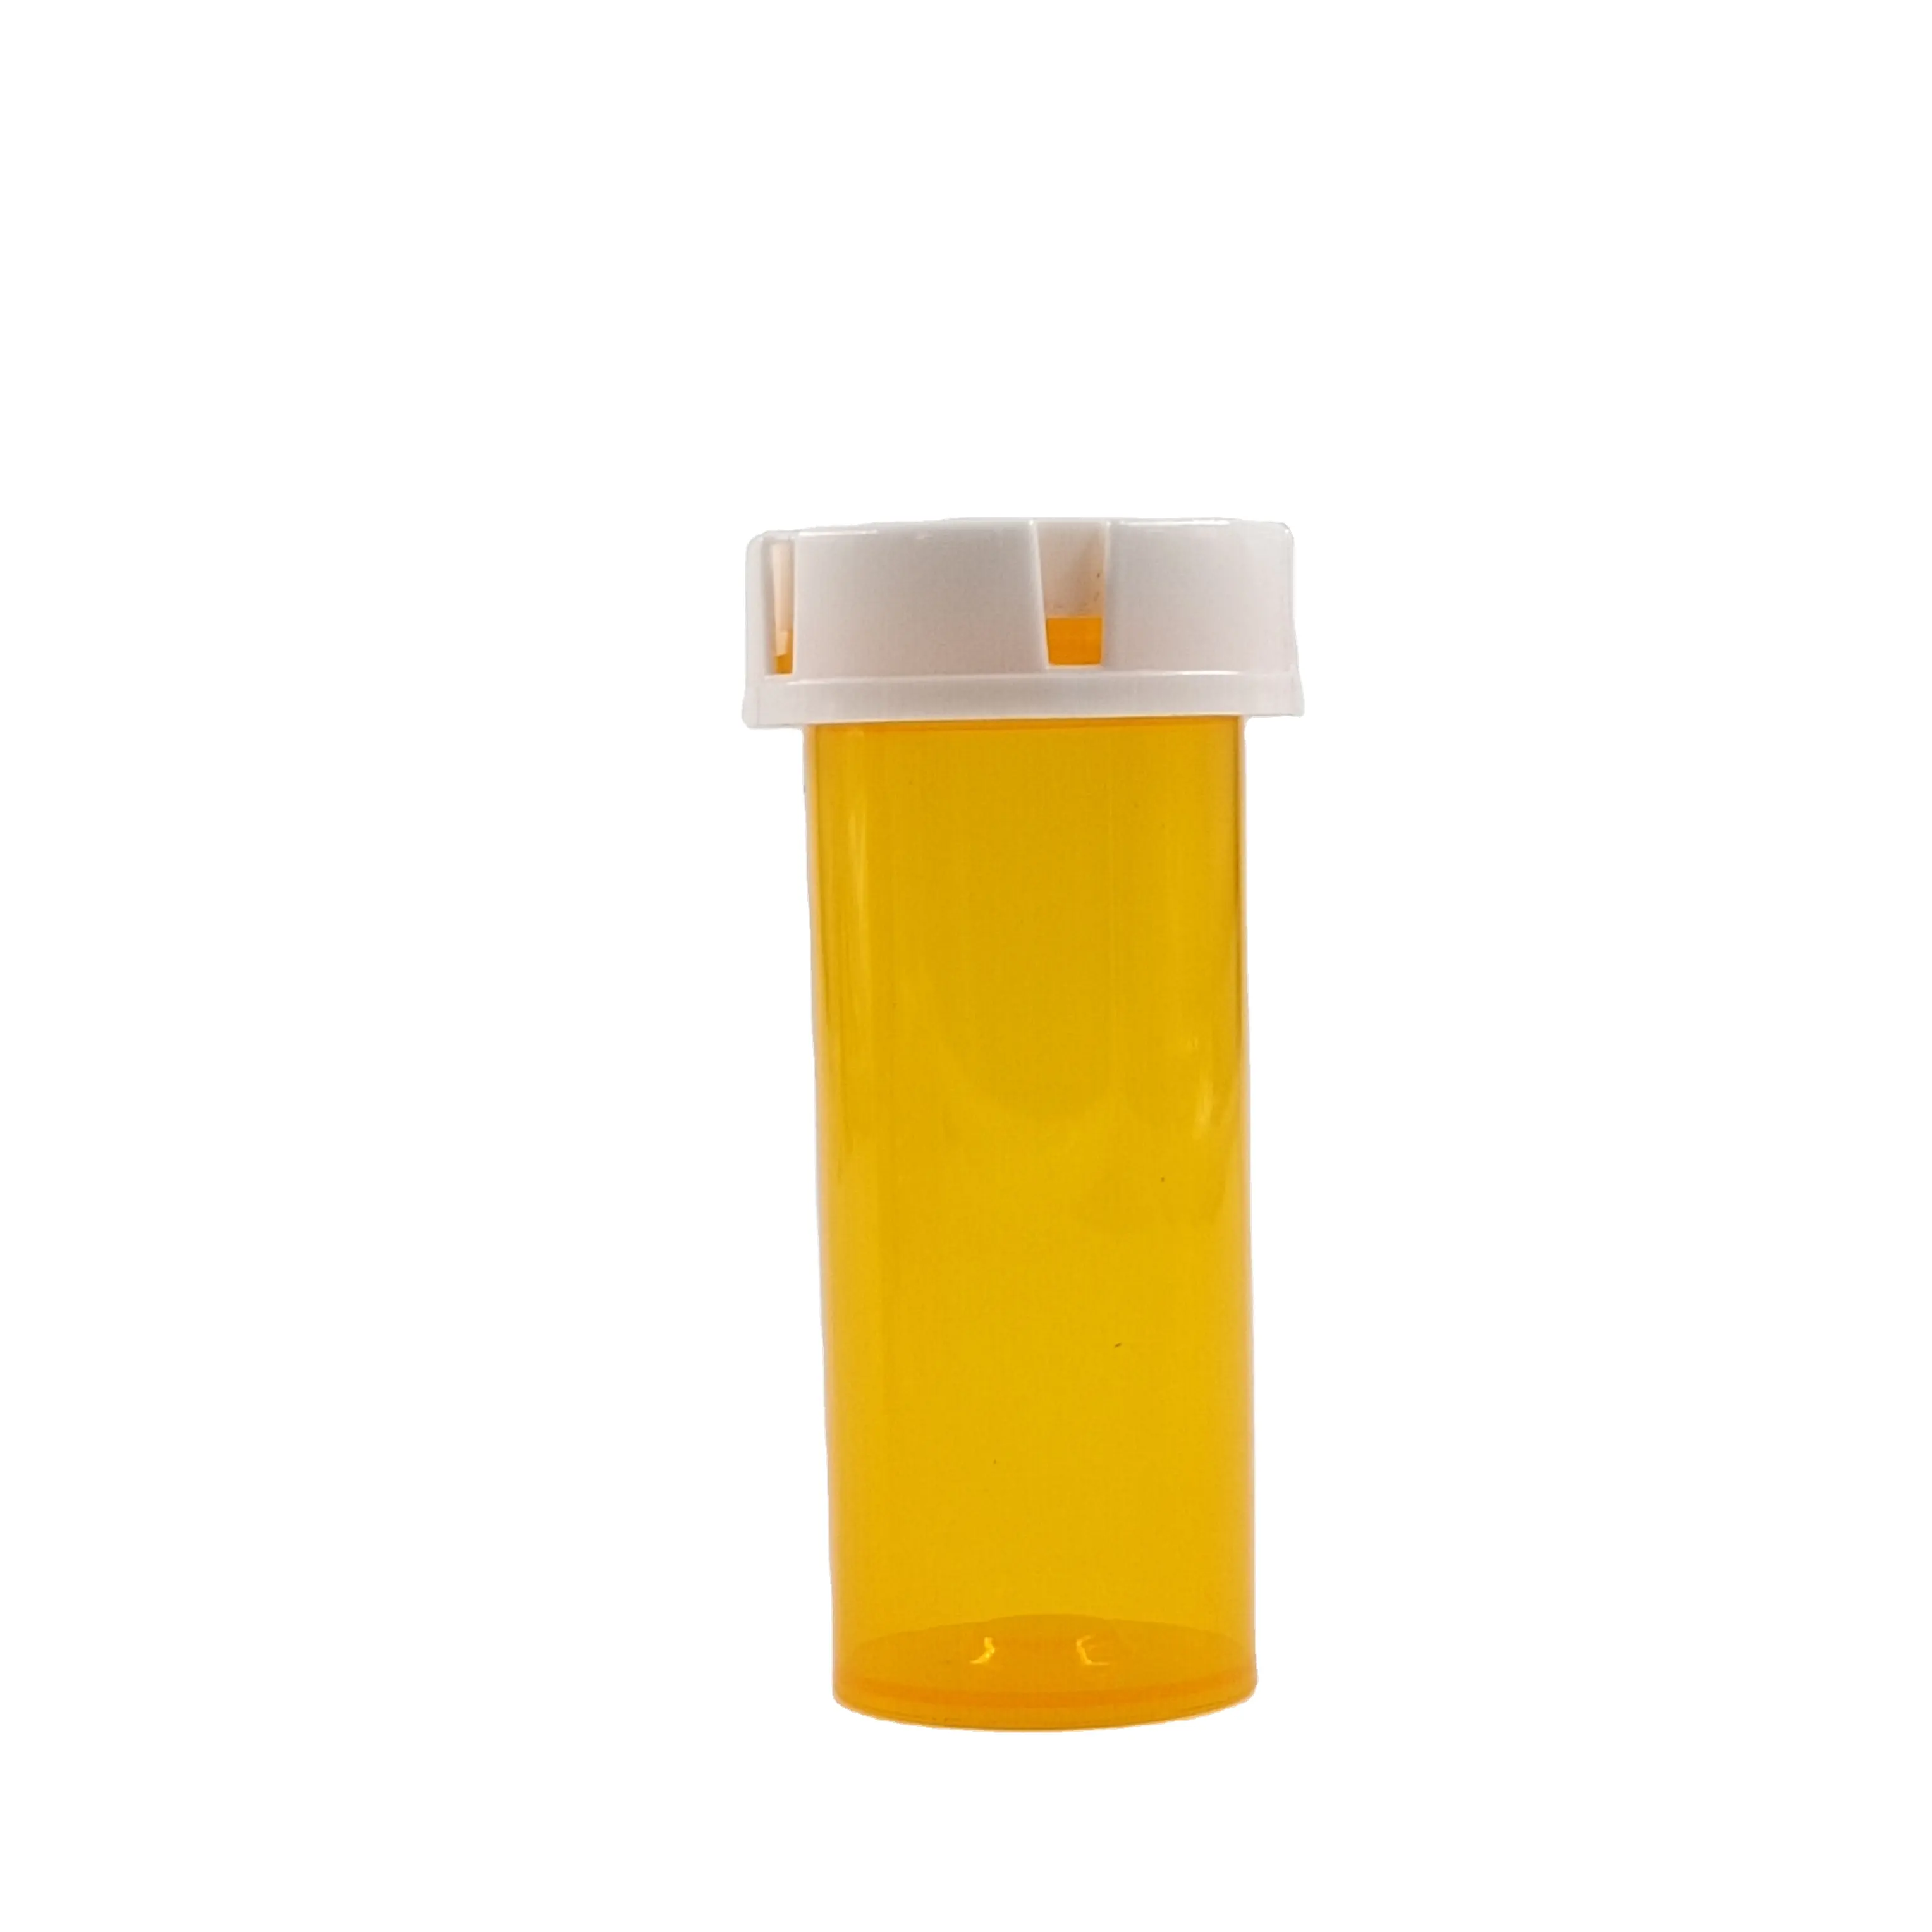 ยาเม็ดขวดพลาสติก5DR ทางการแพทย์พร้อมฝาปิดเปิดใช้กันอย่างแพร่หลาย